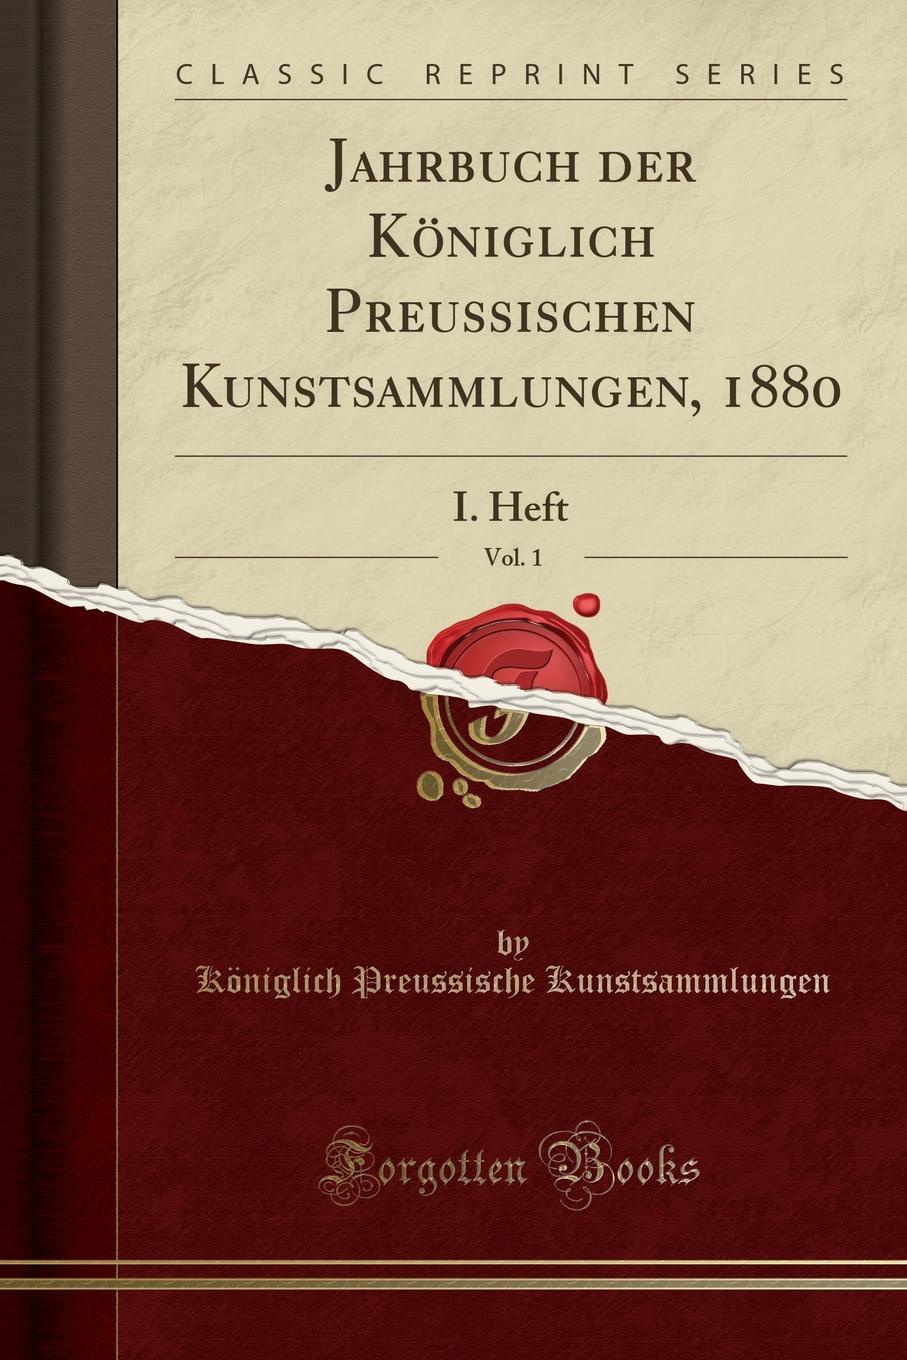 фото Jahrbuch der Koniglich Preussischen Kunstsammlungen, 1880, Vol. 1. I. Heft (Classic Reprint)